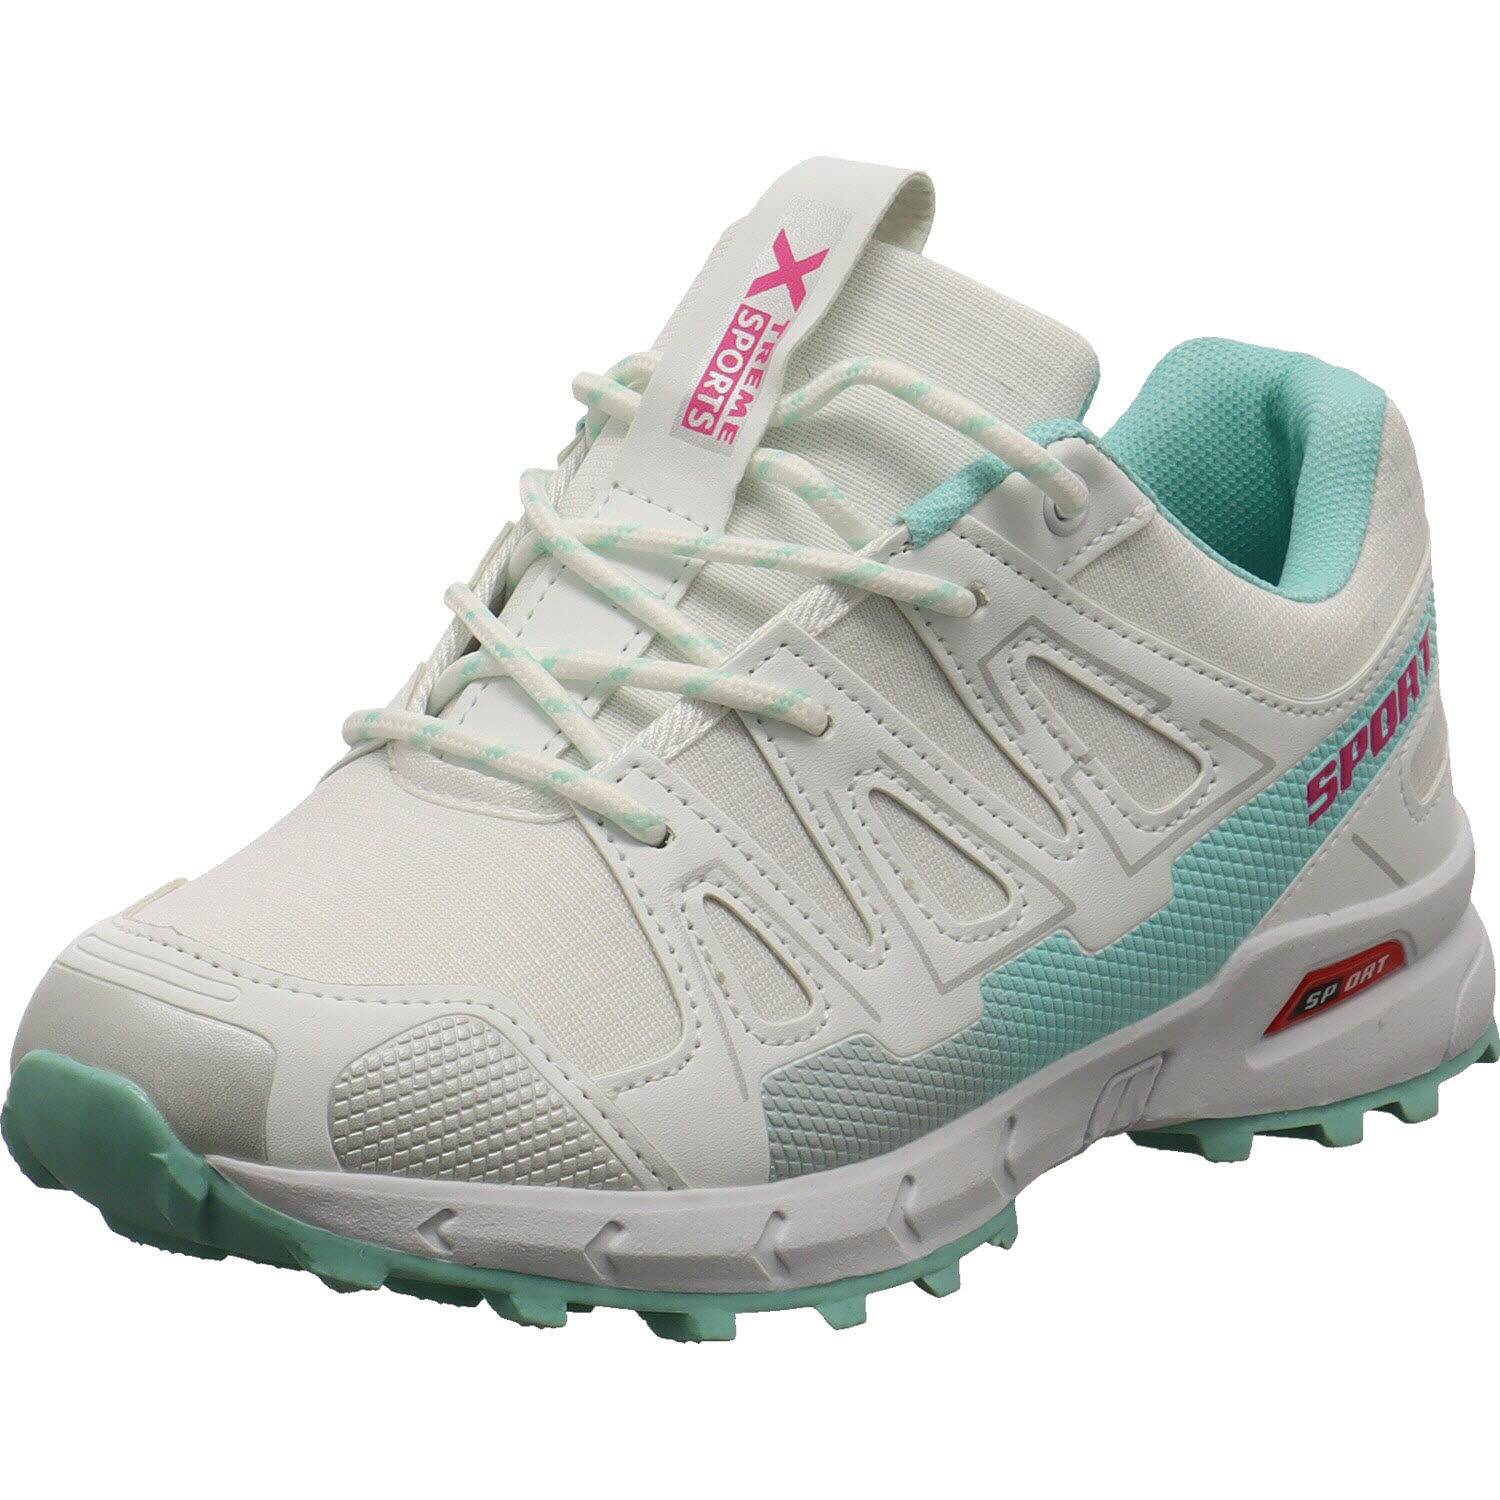 Damen Trekking Schuh von Xtreme Sports auch in Weiß erhältlich